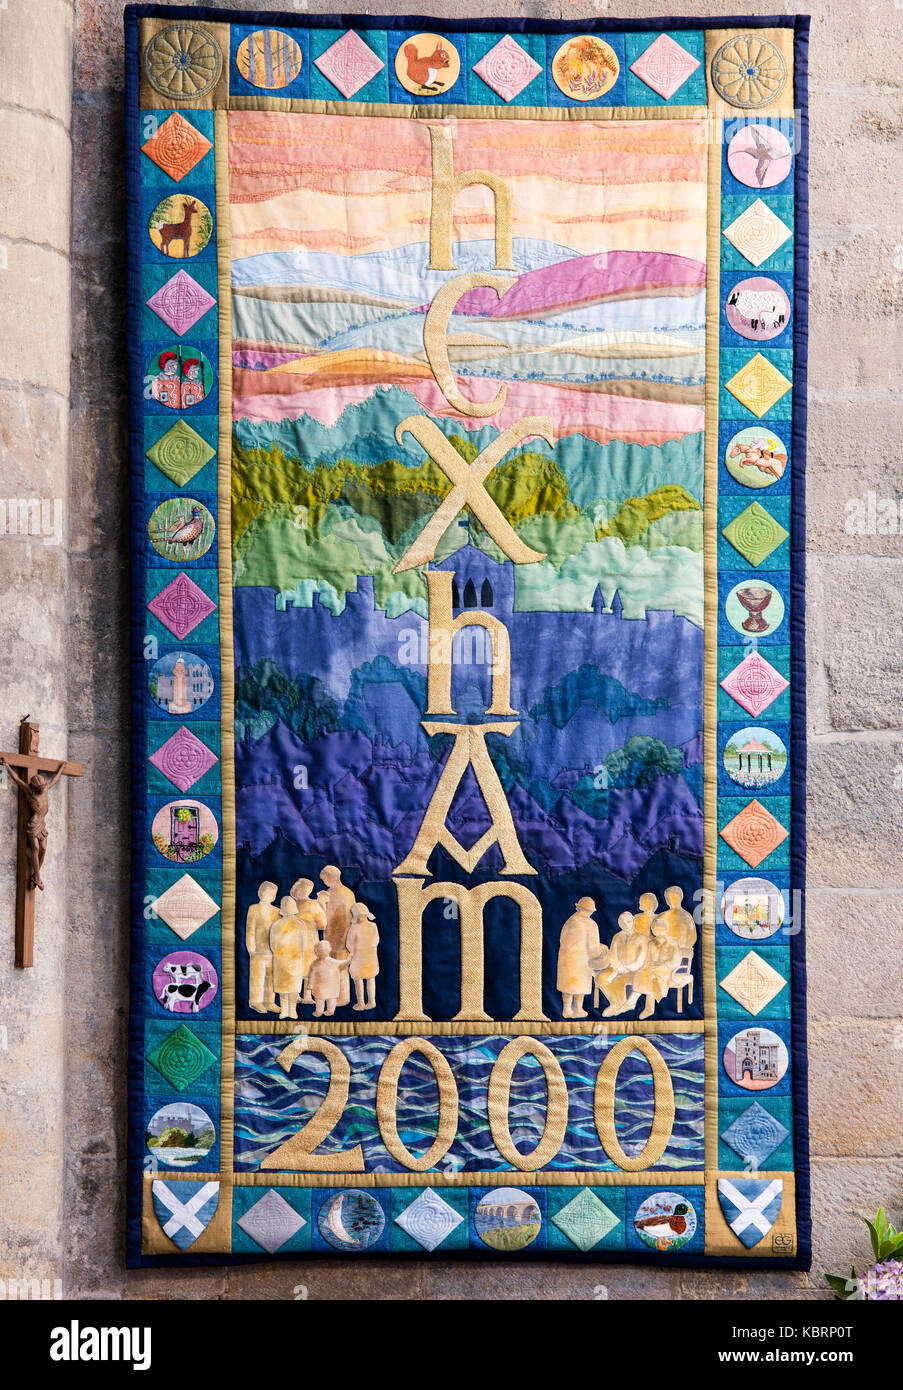 Eine symbolische Darstellung von Hexham, seine Geschichte und Lebensweise im Jahr 2000, Hexham Abbey, Großbritannien Stockfoto